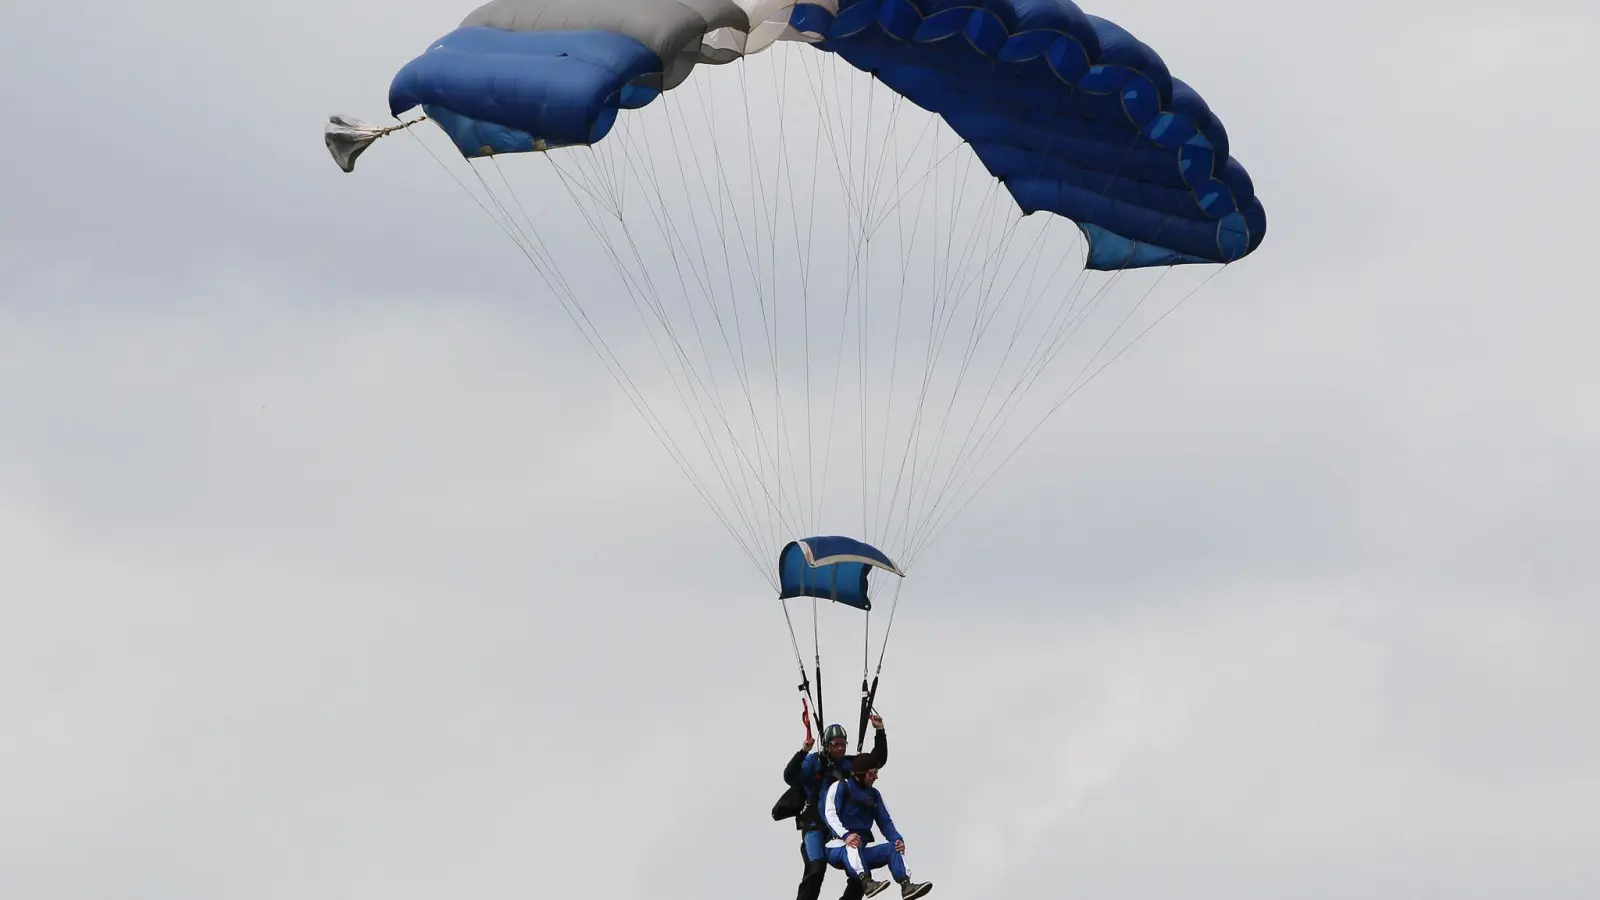 Aufregend, aber nicht ganz ohne Risiko: ein Tandem-Fallschirmsprung. Der Haftung können sich Tandem-Piloten dabei nicht entziehen. (Foto: Malte Christians/dpa/dpa-tmn)